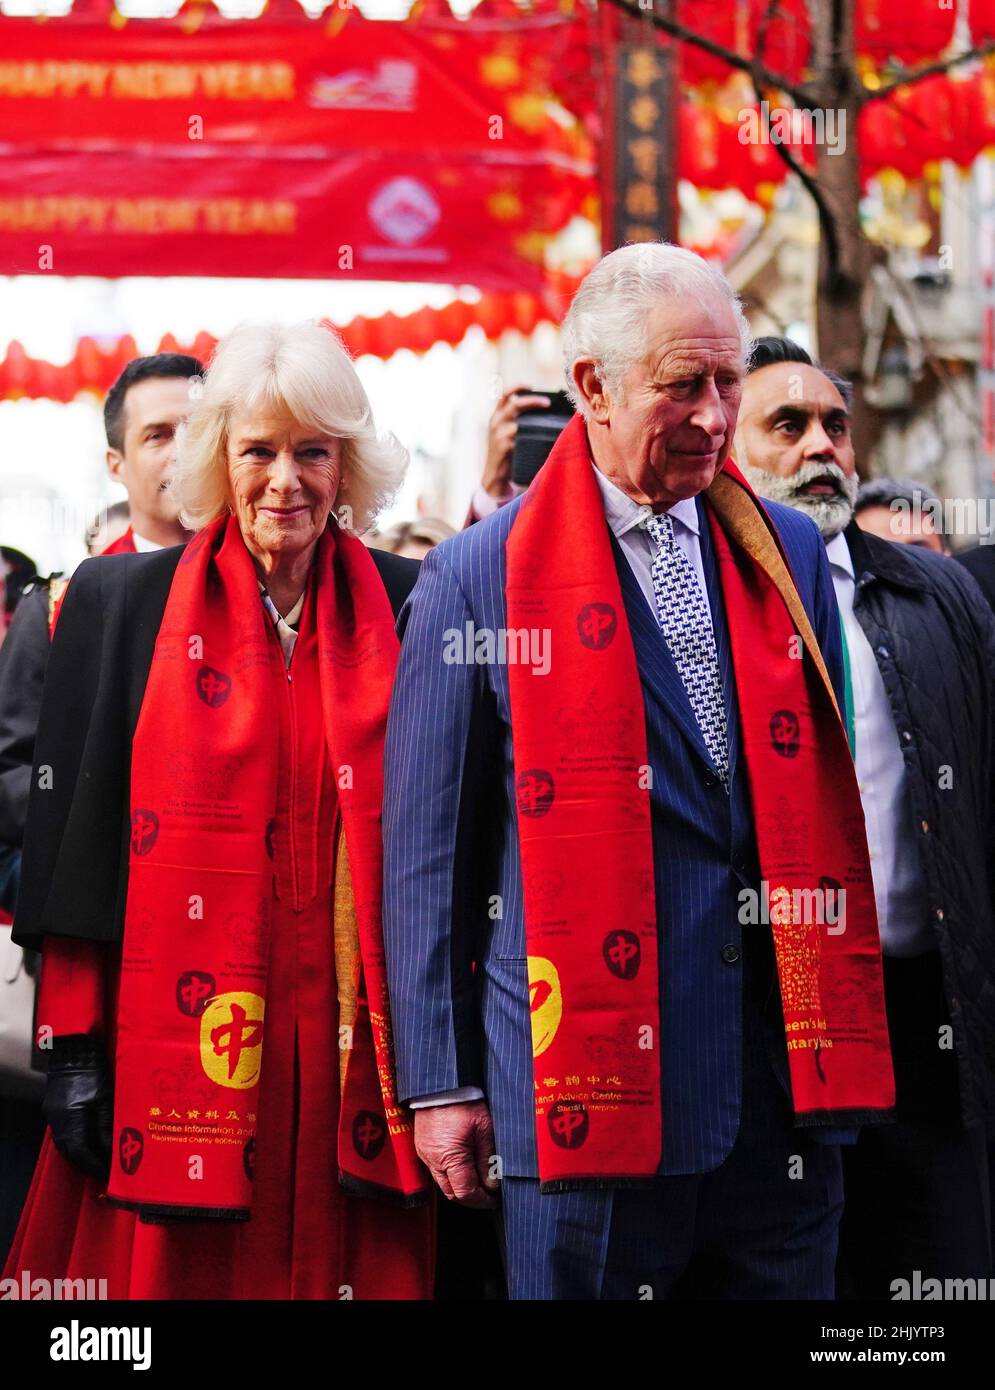 Le prince de Galles et la duchesse de Cornwall dans le quartier chinois de Londres pour célébrer le nouvel an lunaire.Date de la photo: Mardi 1 février 2022. Banque D'Images